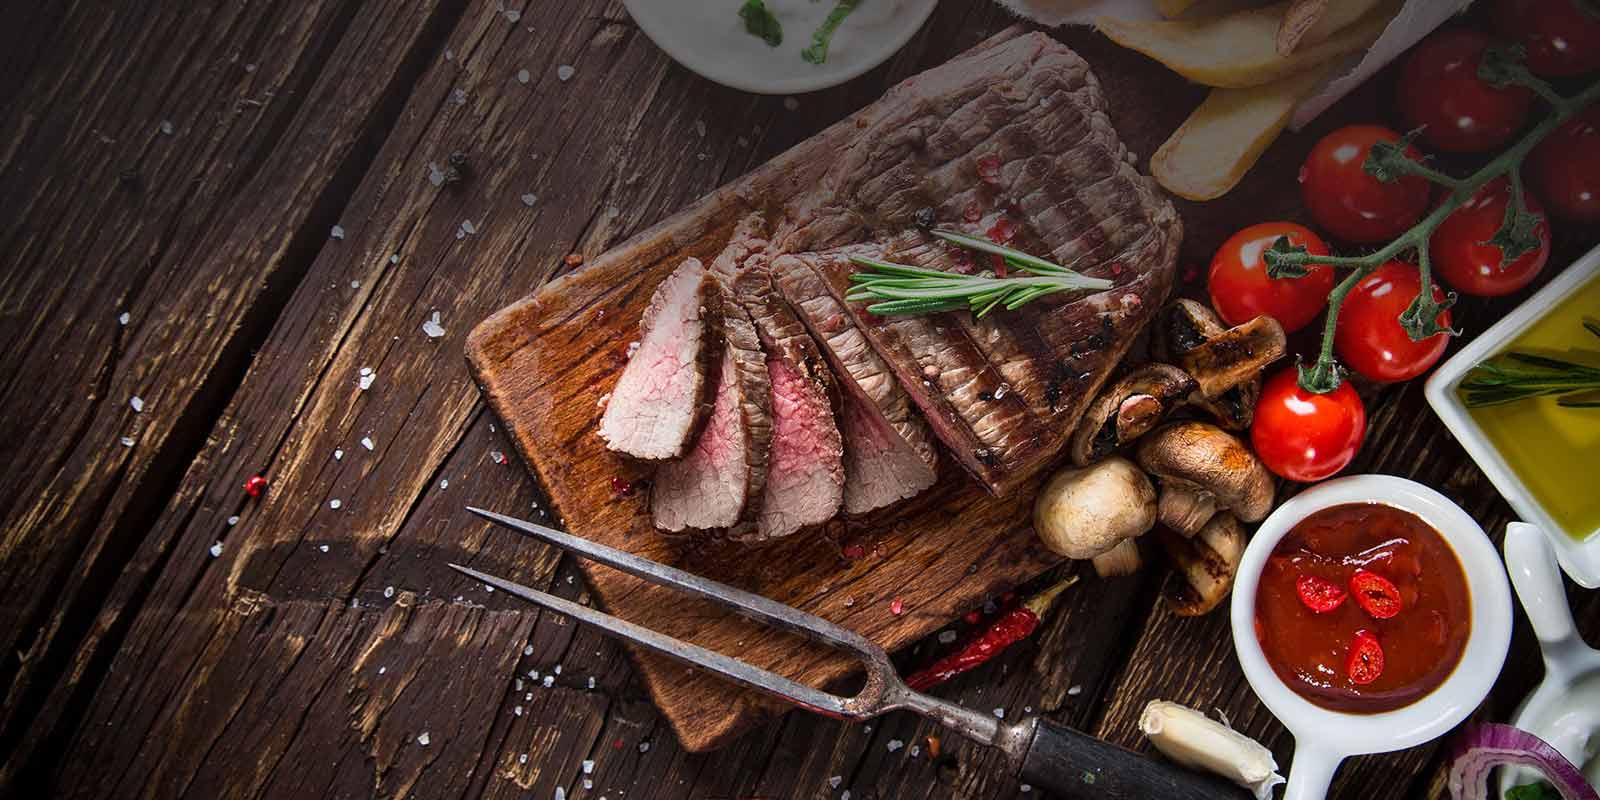 Greenlea meso s Novog Zelanda Greenlea se ponosi proizvodnjom najbolje govedine koja je 100% hranjena travom.